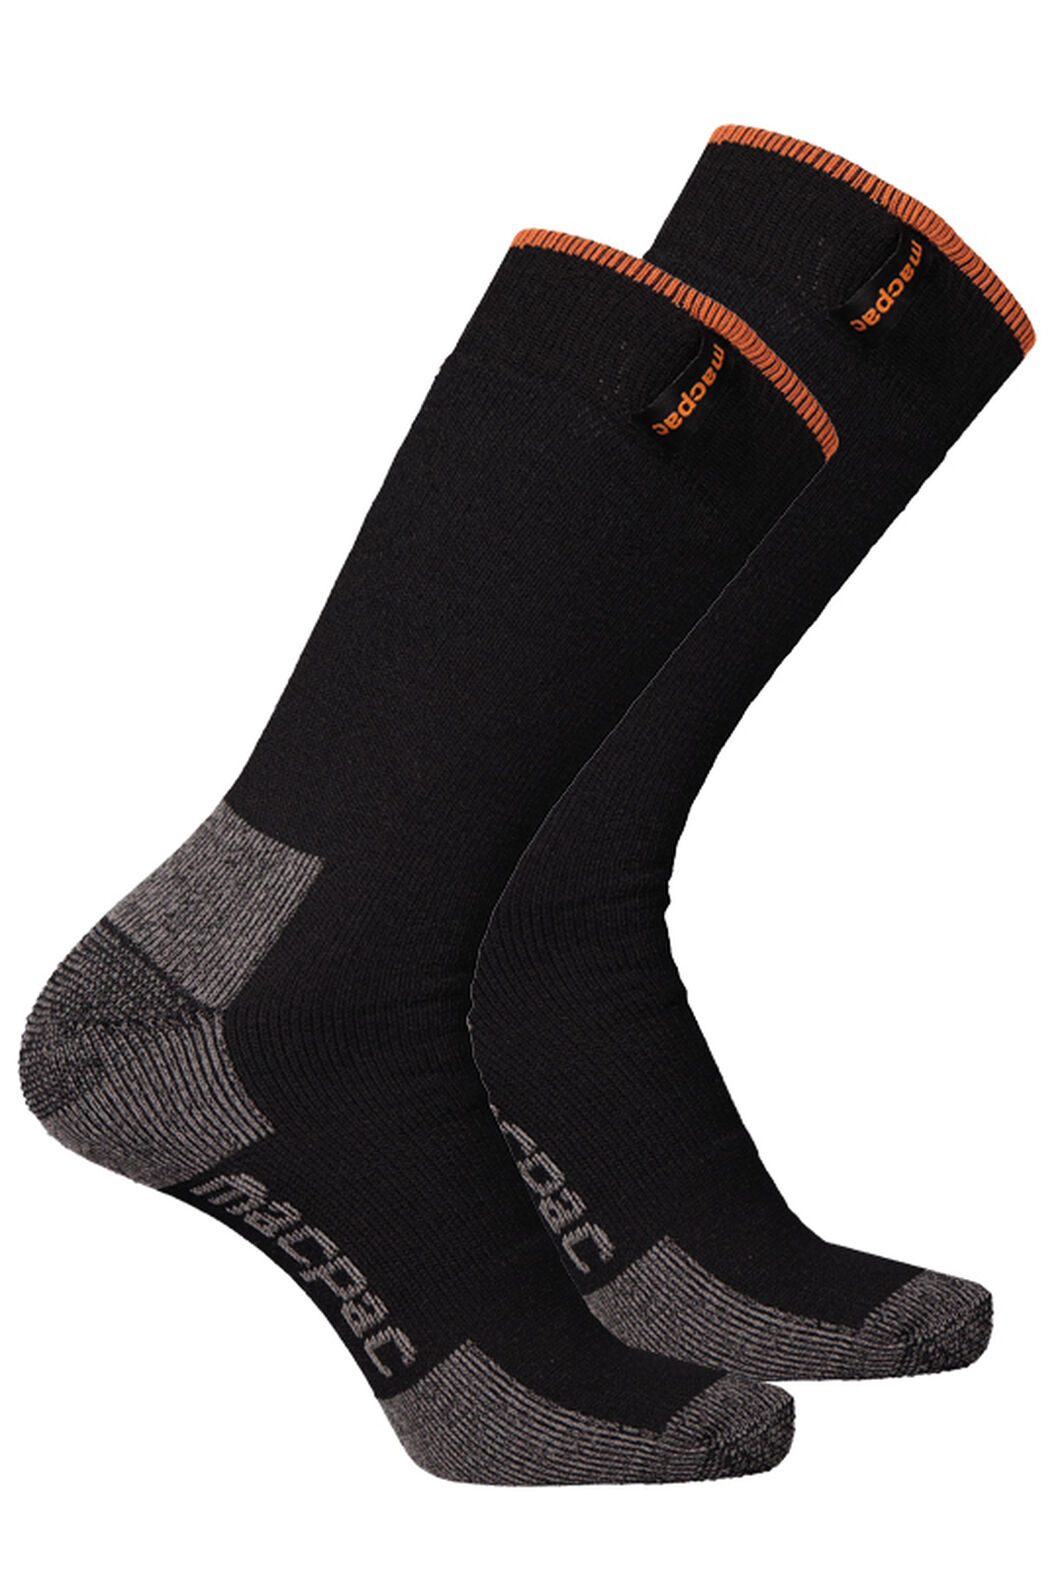 Macpac Thermal Sock — 2 Pack, Black/Black, hi-res